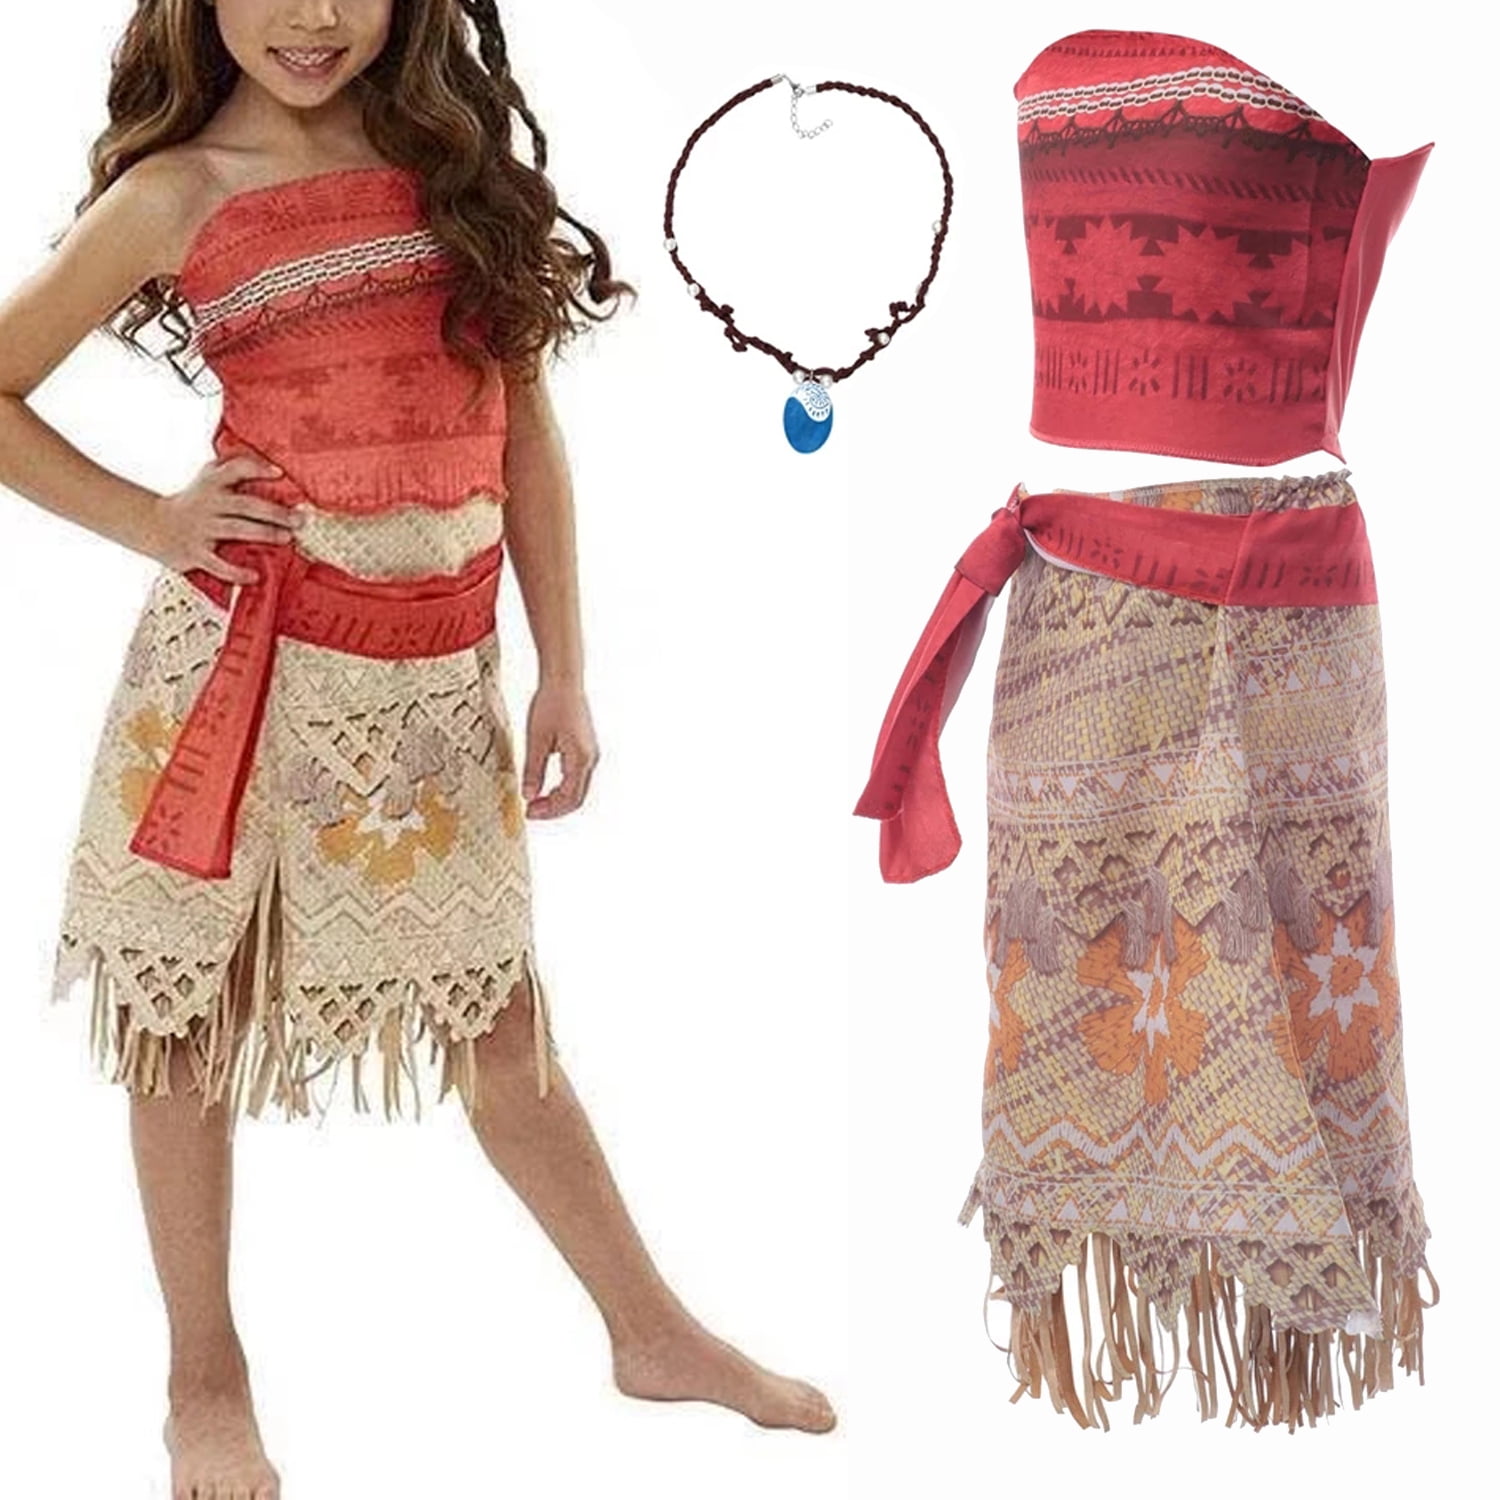 Moana Inspired Costume / Baby Moana/ Disney Moana Dress / 